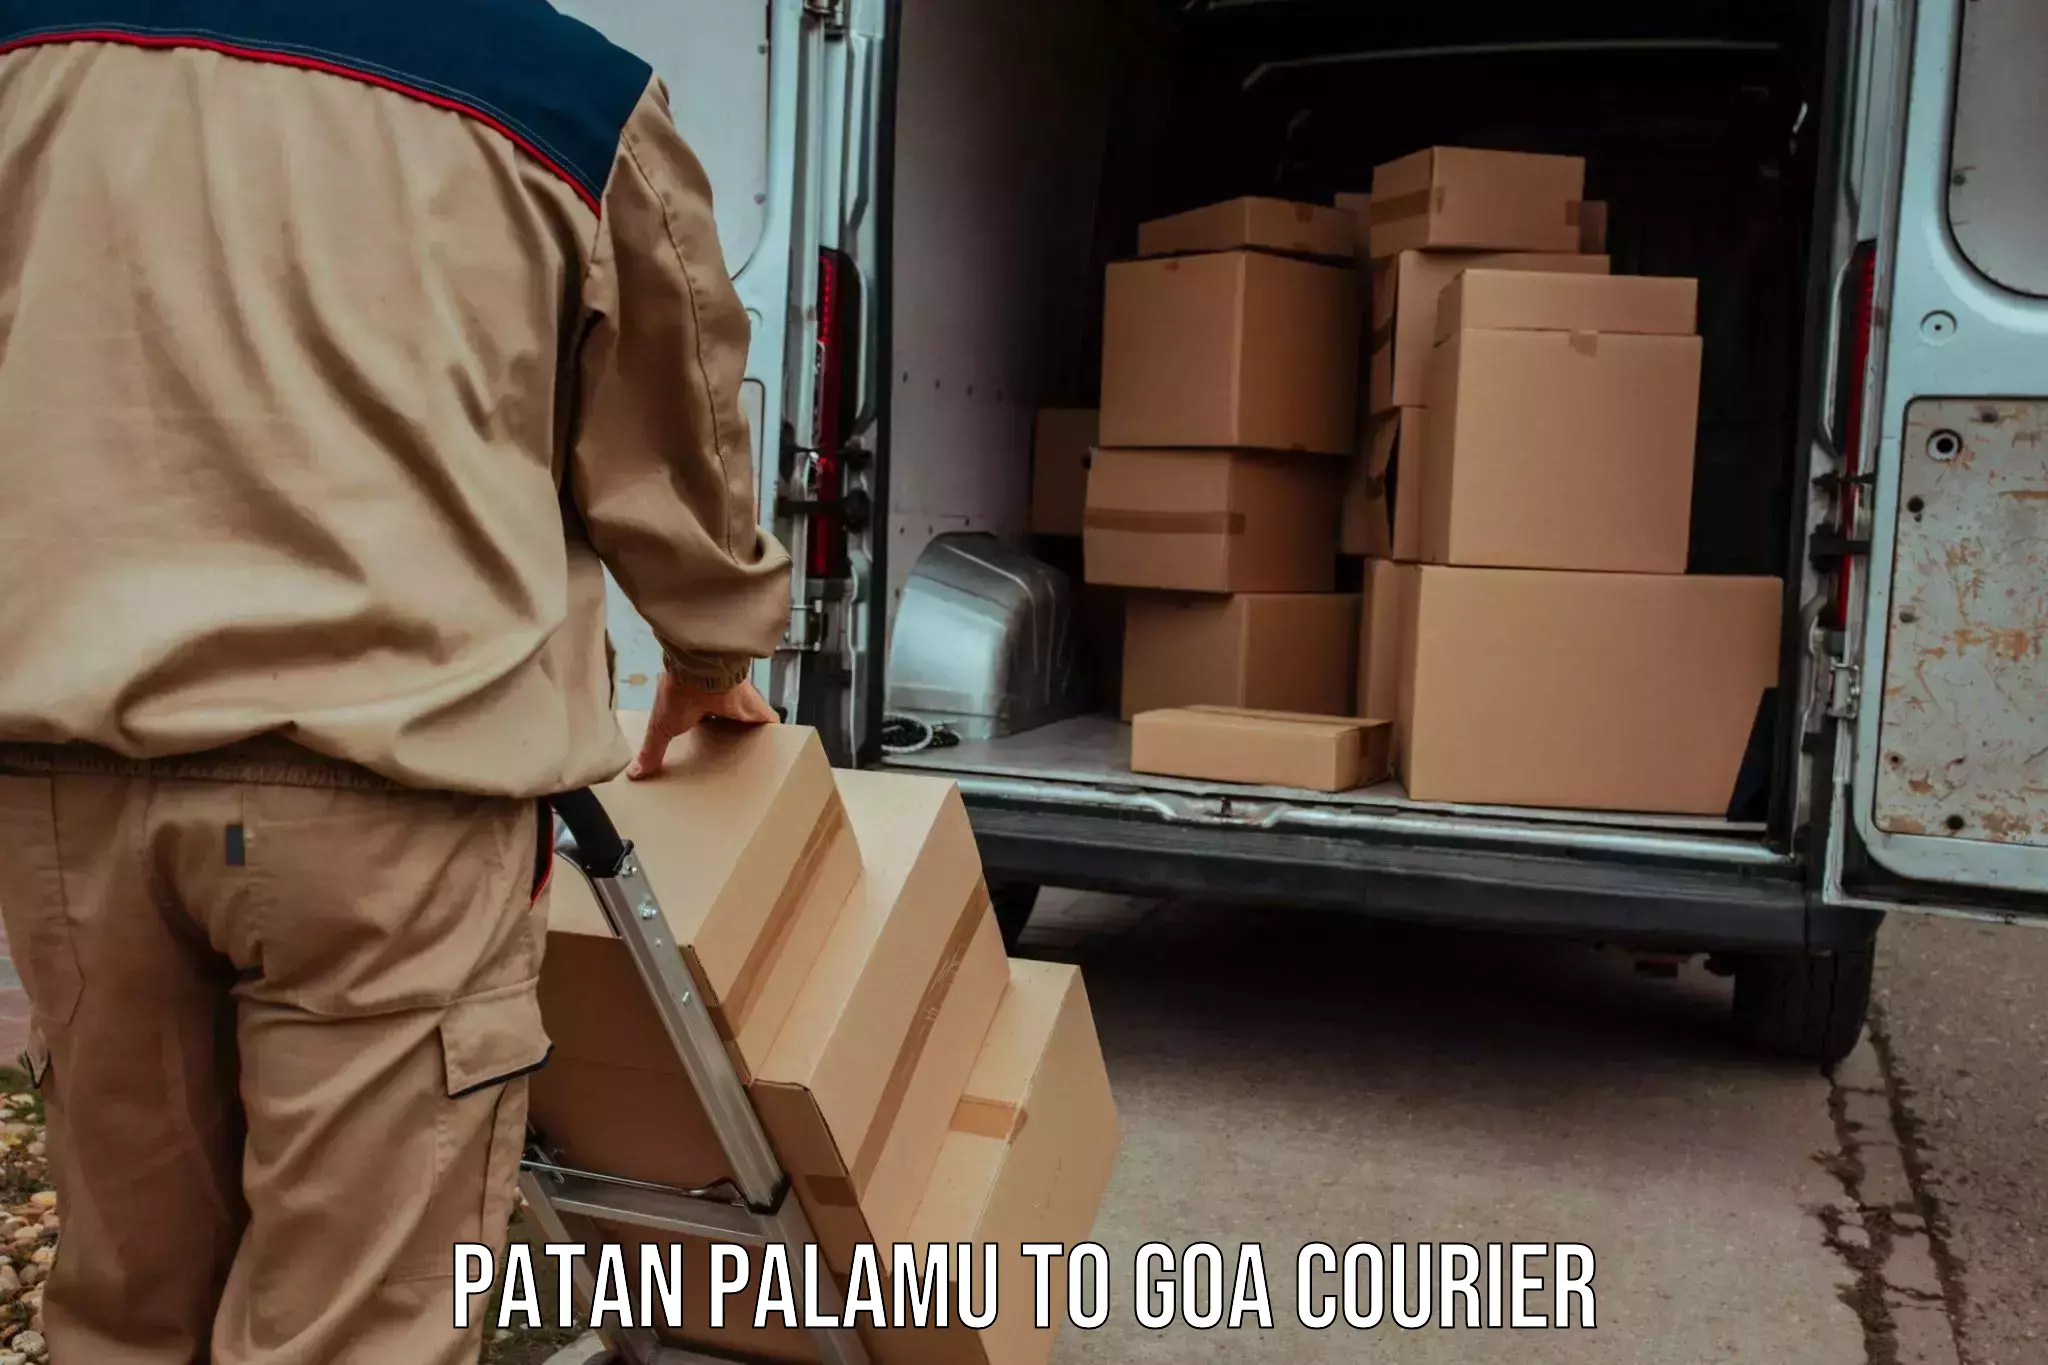 24/7 courier service Patan Palamu to Ponda